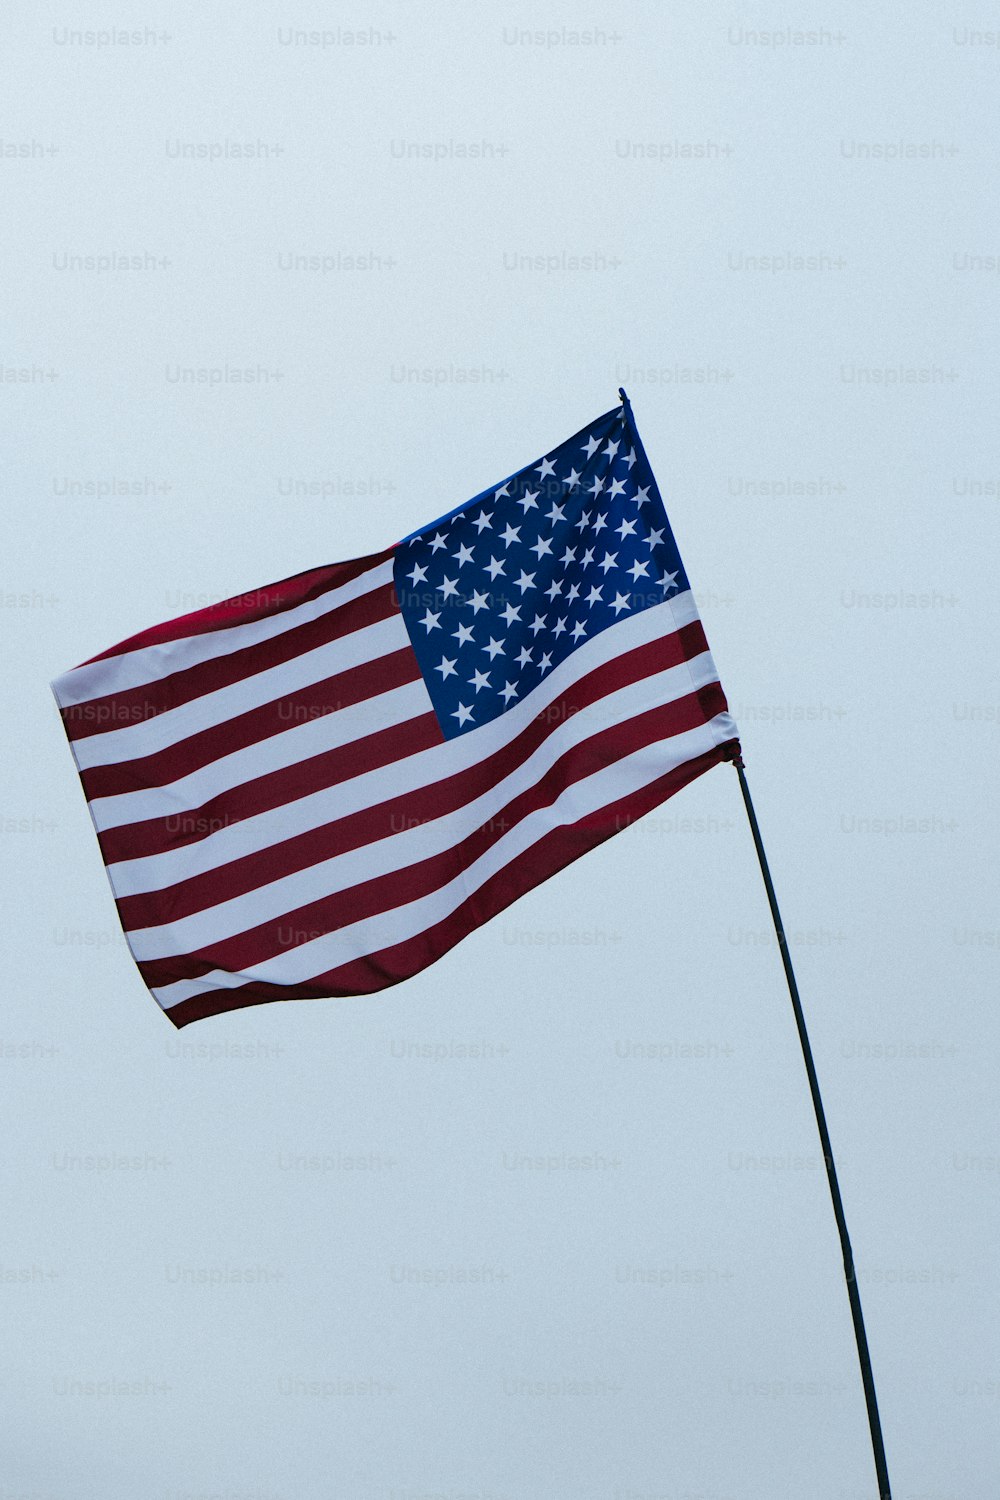 uma grande bandeira americana voando no céu